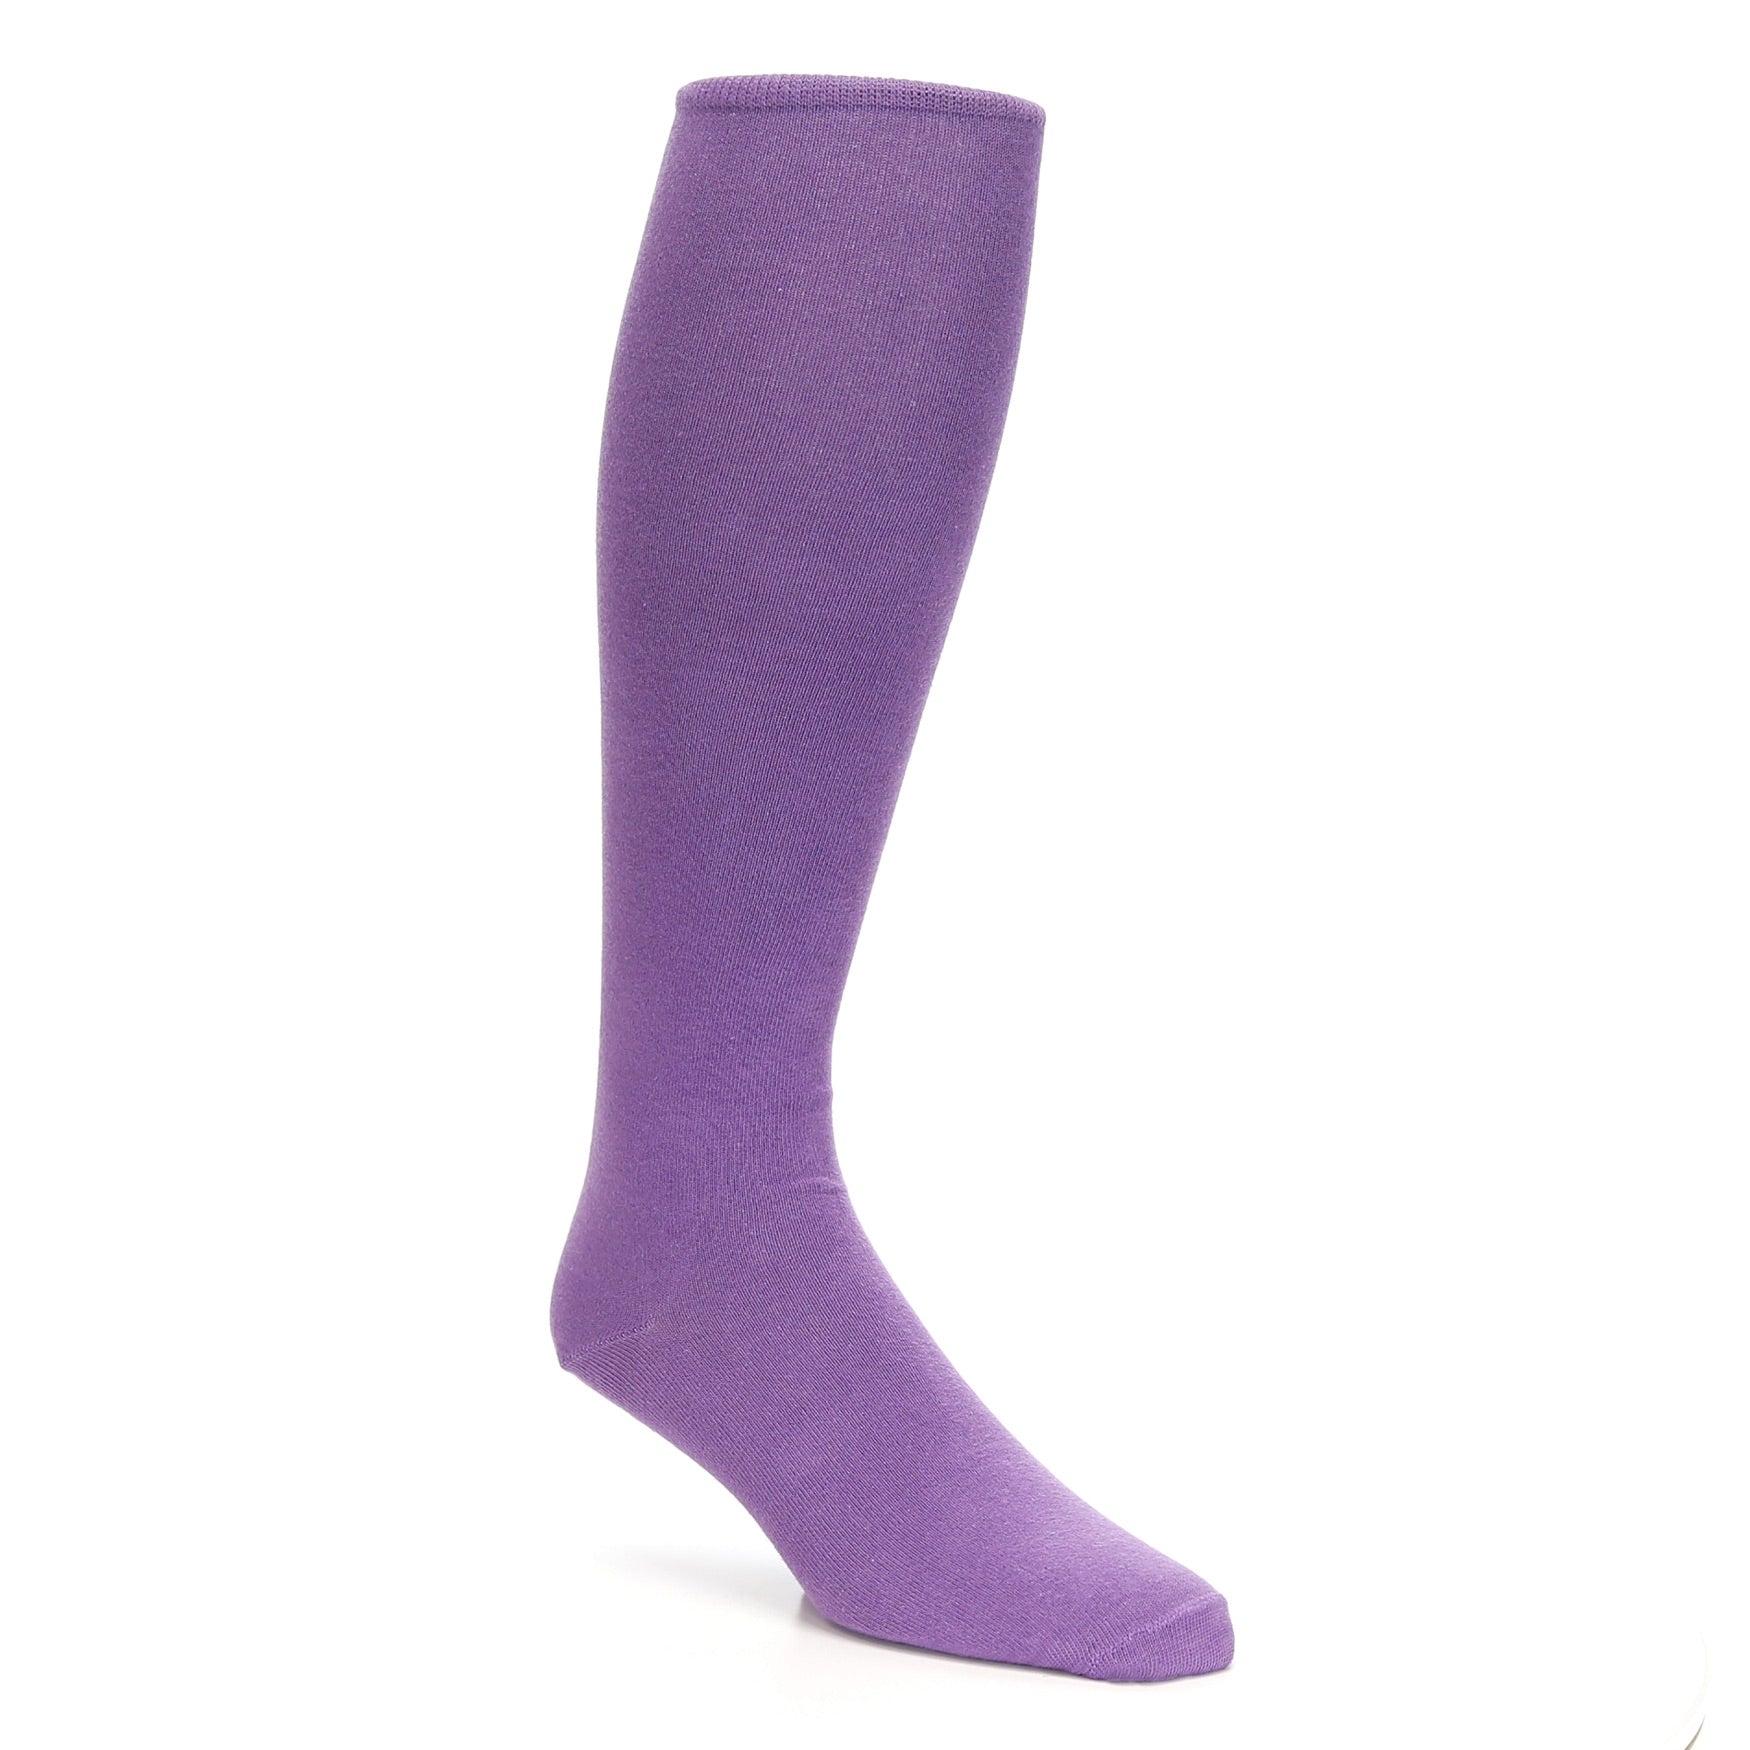 A Lilac Men's Over-the-Calf Sock